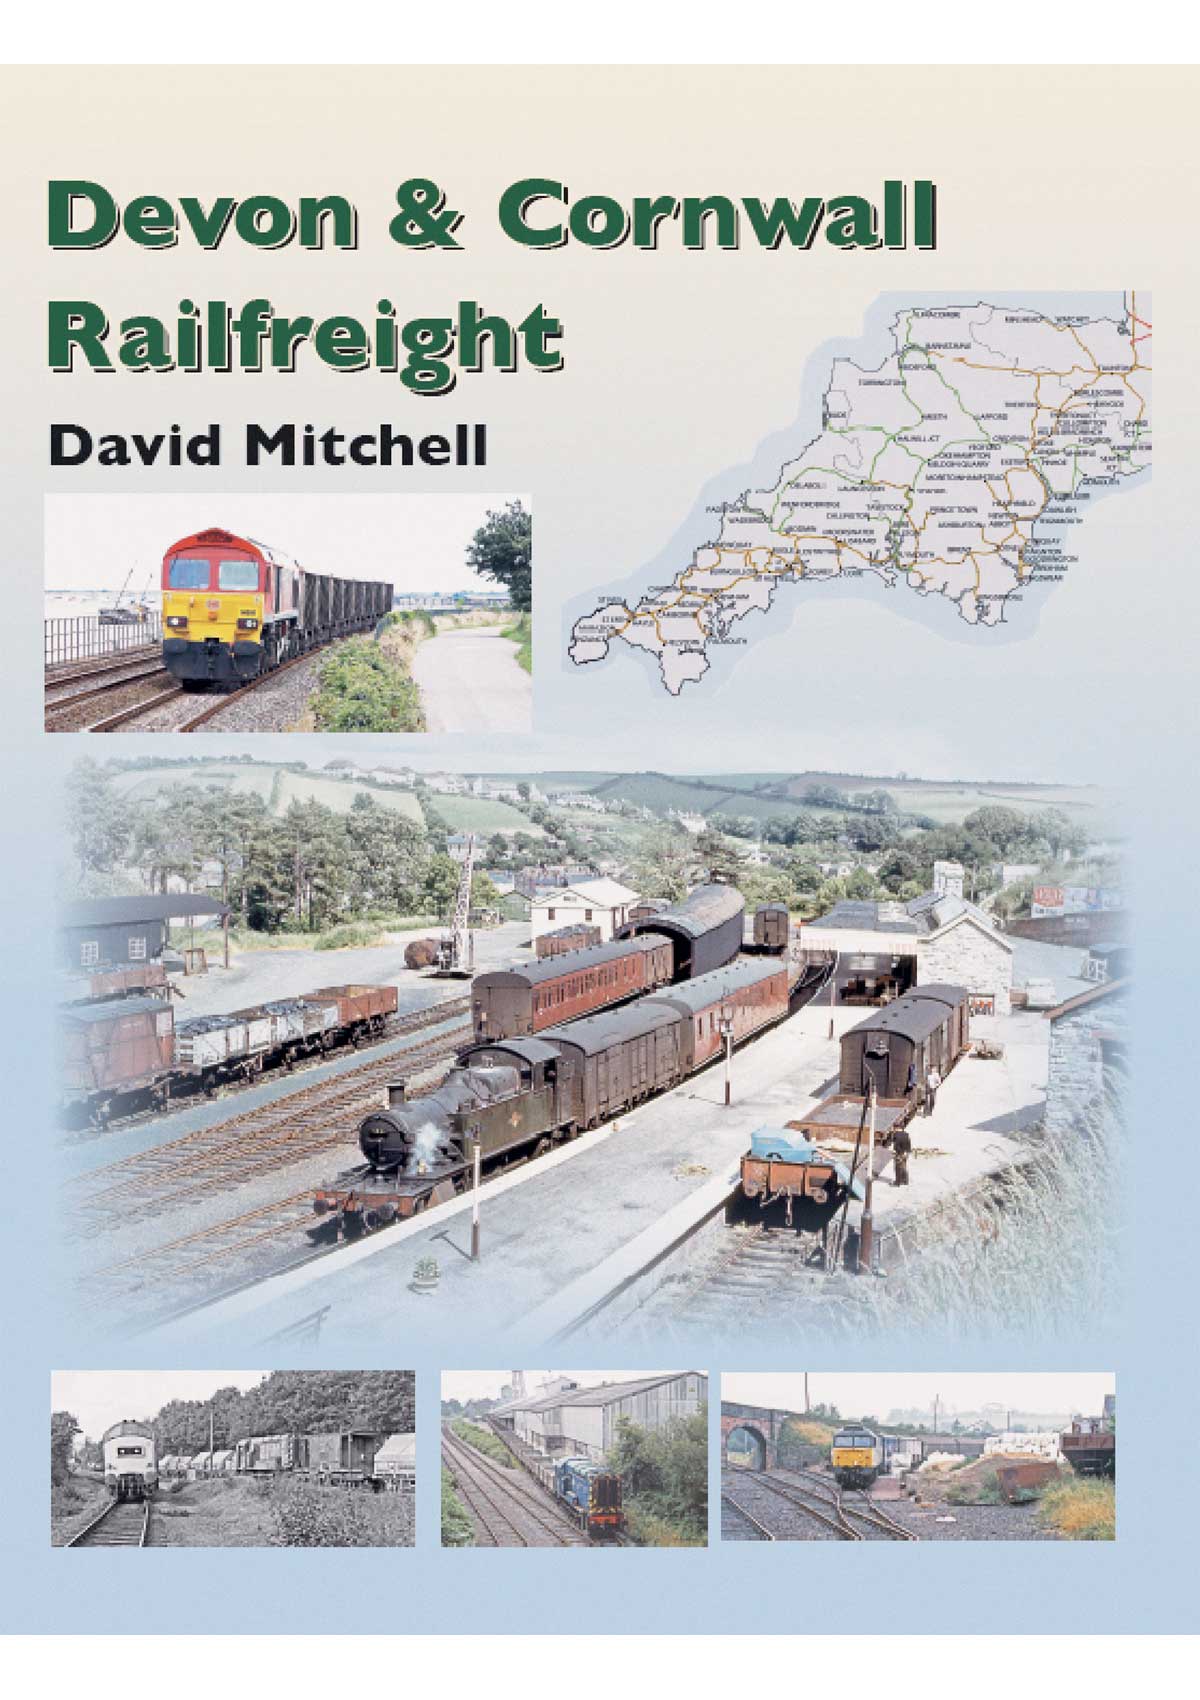 Devon & Cornwall Railfreight